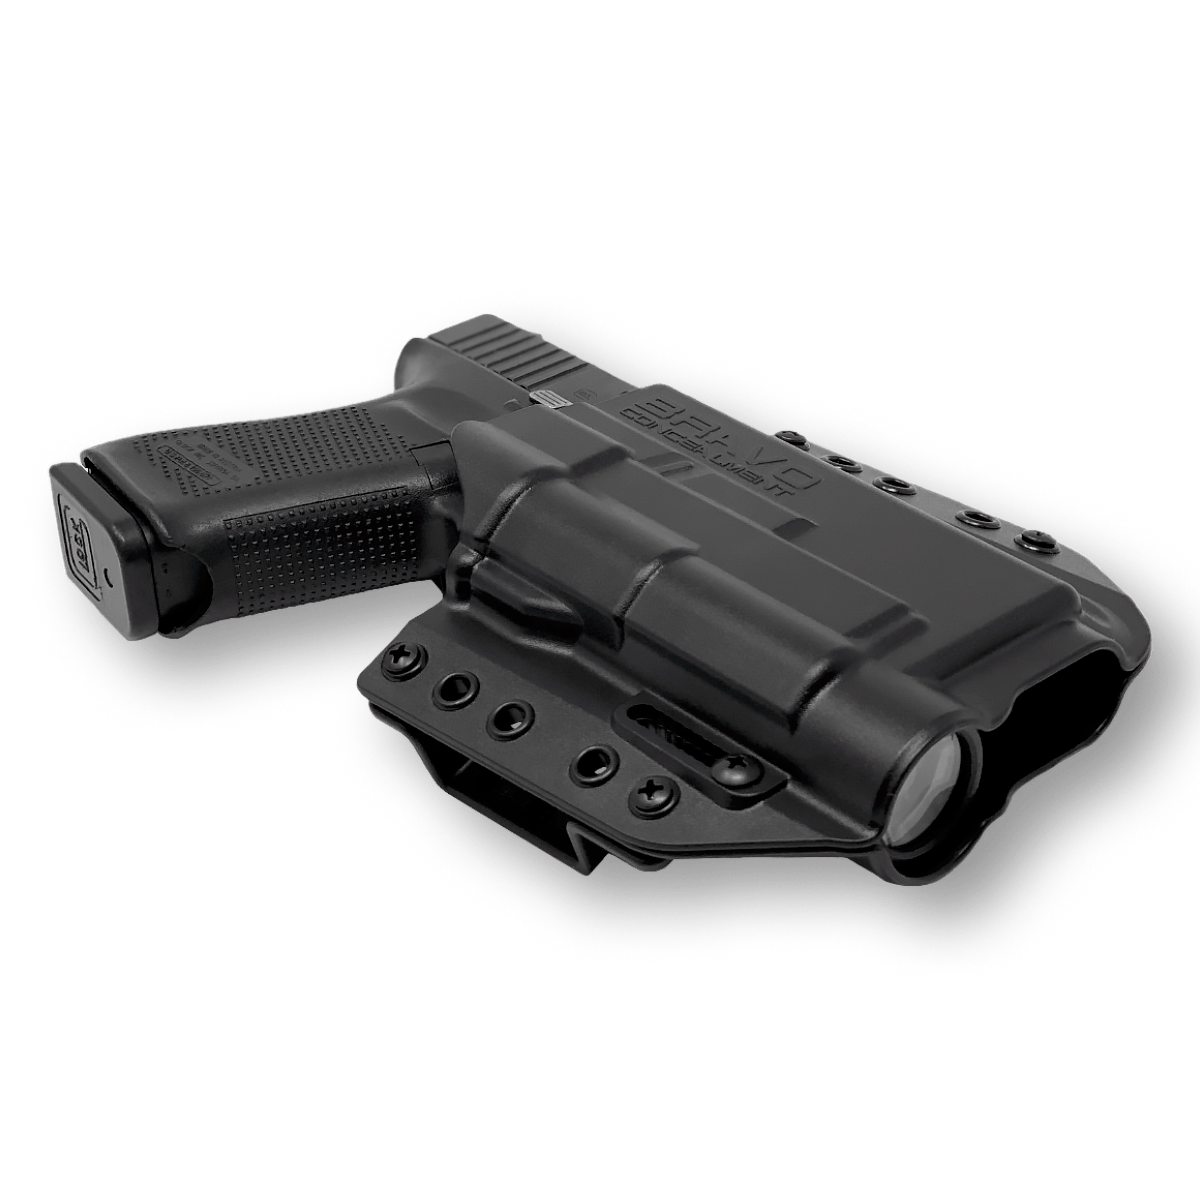 OWB Concealment Holster for Glock 19 Gen 5 MOS Streamlight TLR1 HL